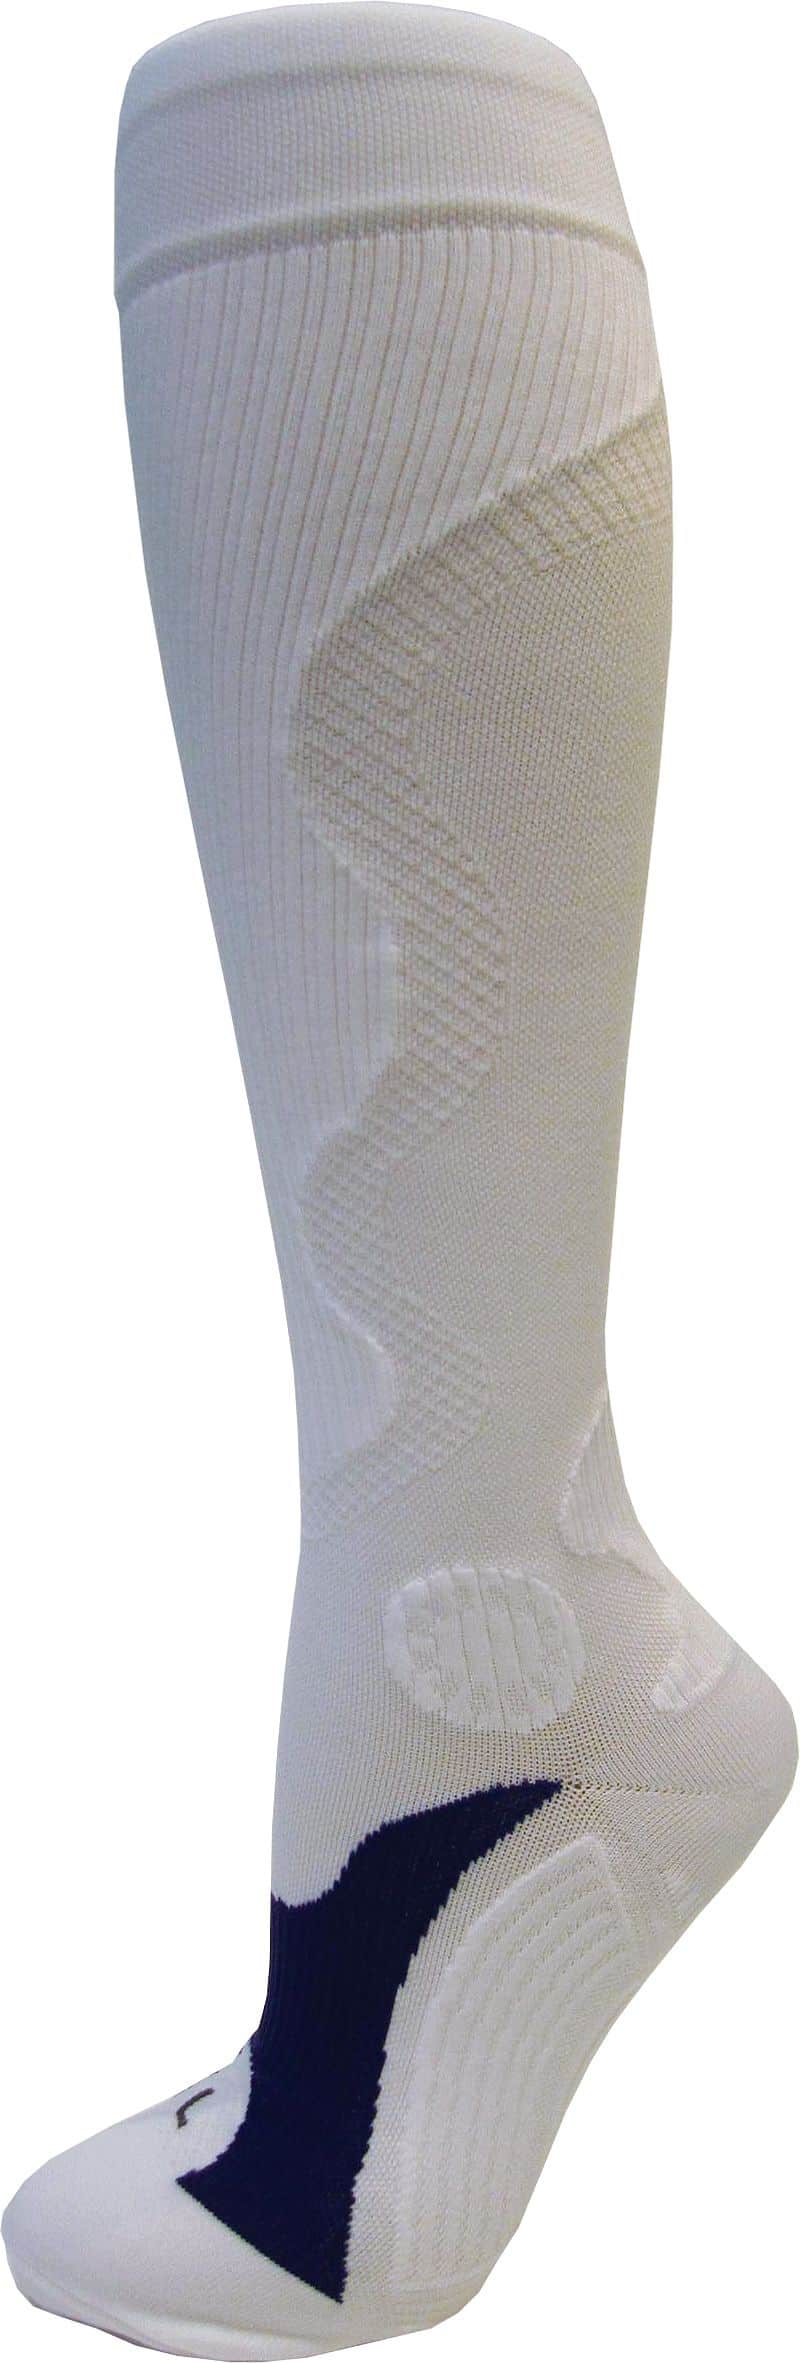 Rulyt Kompresní sportovní ponožky WAVE, bílé Bota velikost: M